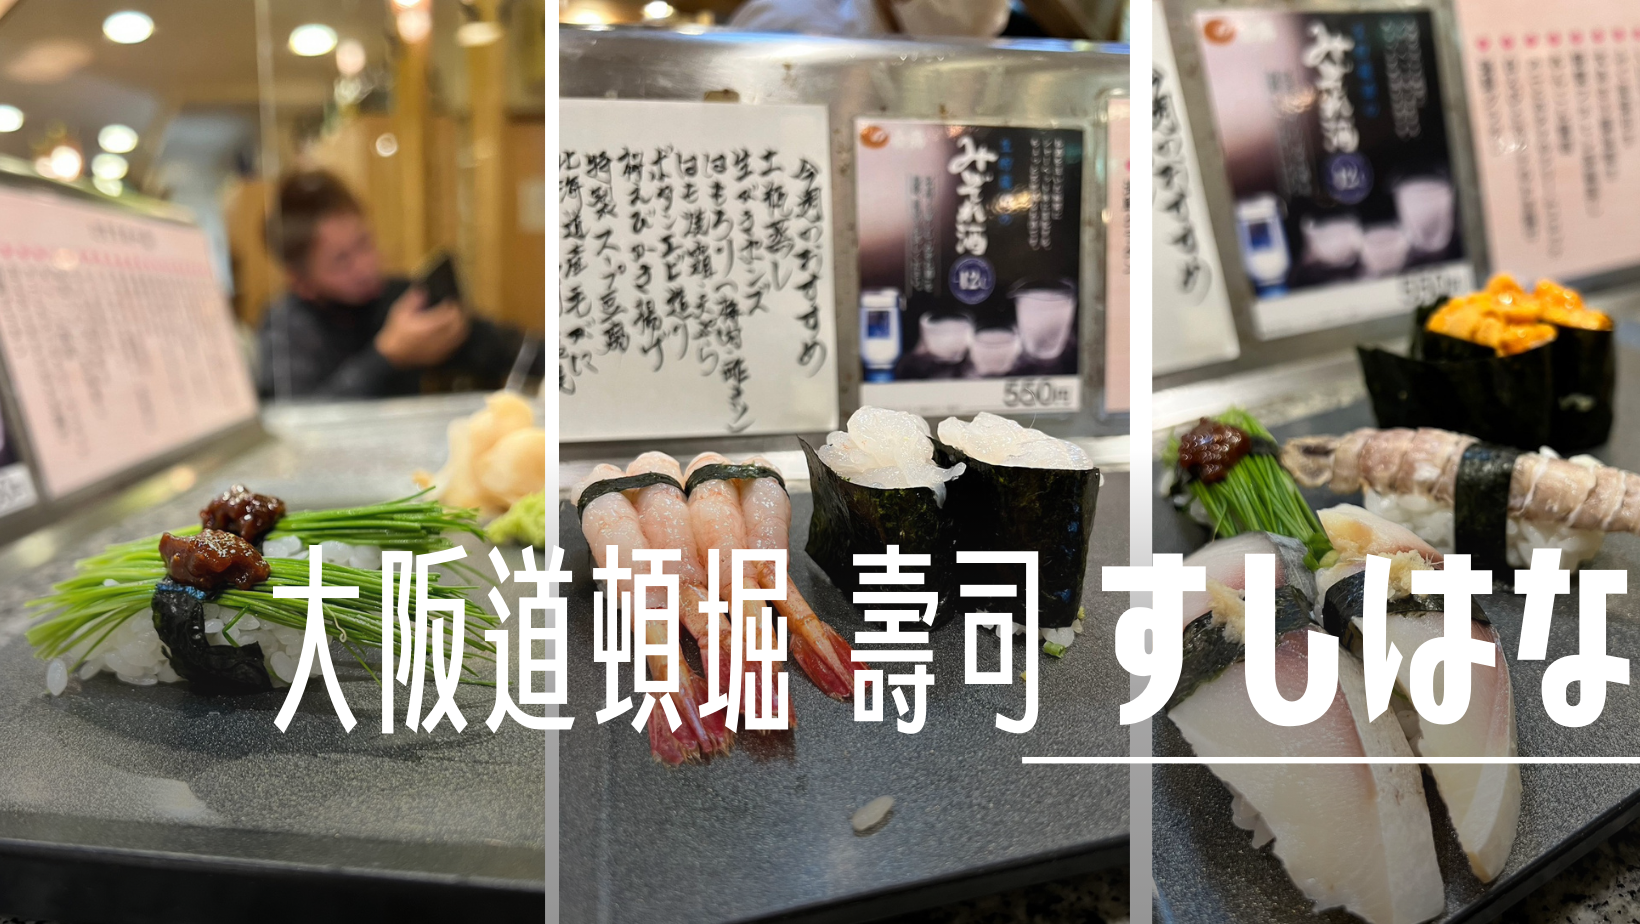 羽田機場第一航廈餐廳 Hitoshinaya (ひとしなや) 日式定食、海鮮丼飯